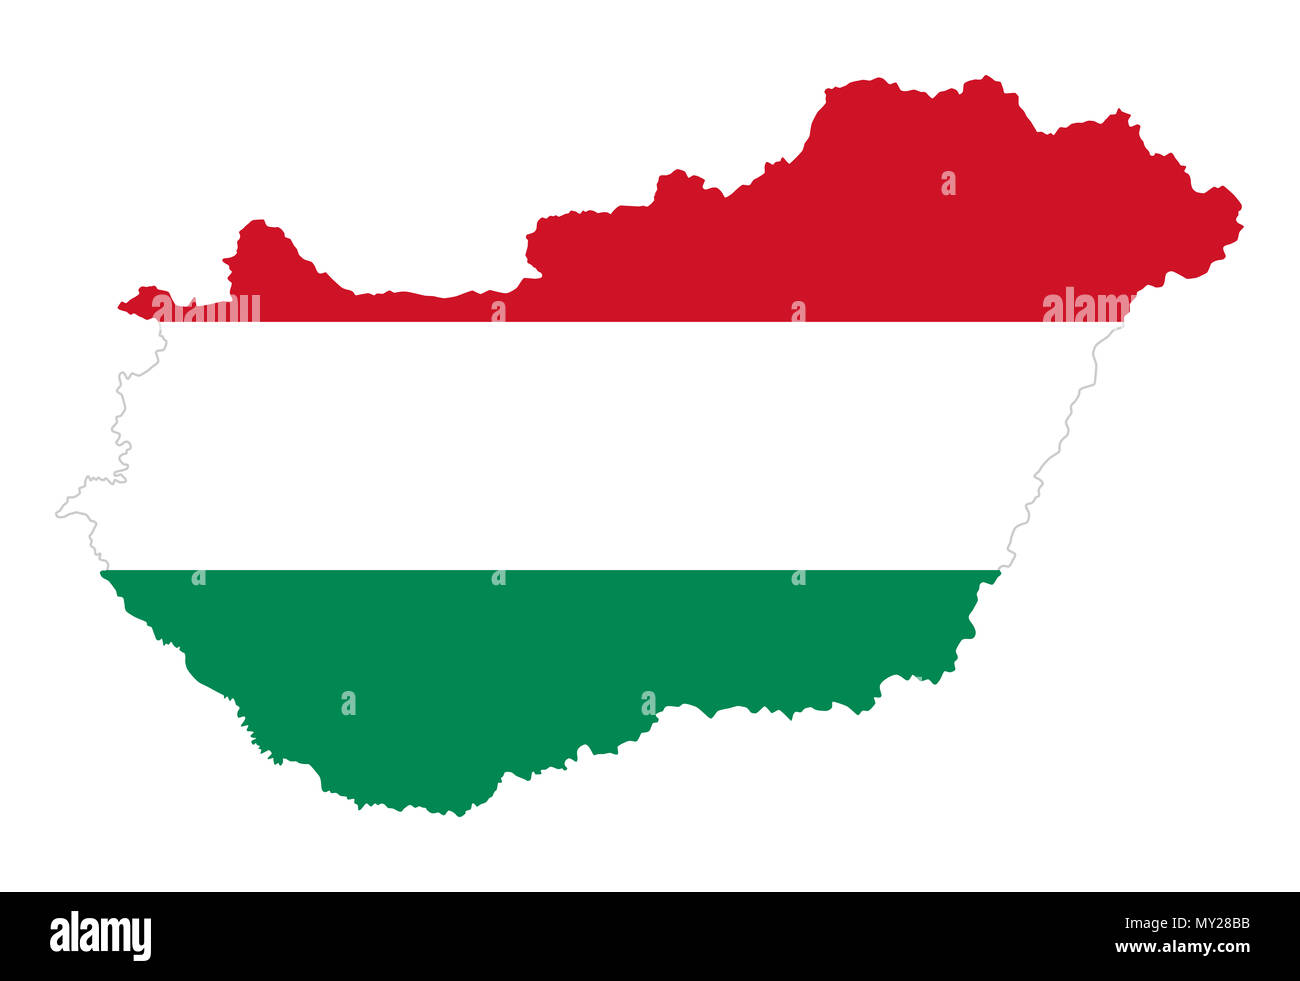 Bandiera dell'Ungheria in silhouette di paese. Tricolore ungherese, orizzontale rosso, bianco e strisce verdi nel paese di contorno. Stato in Europa centrale. Foto Stock